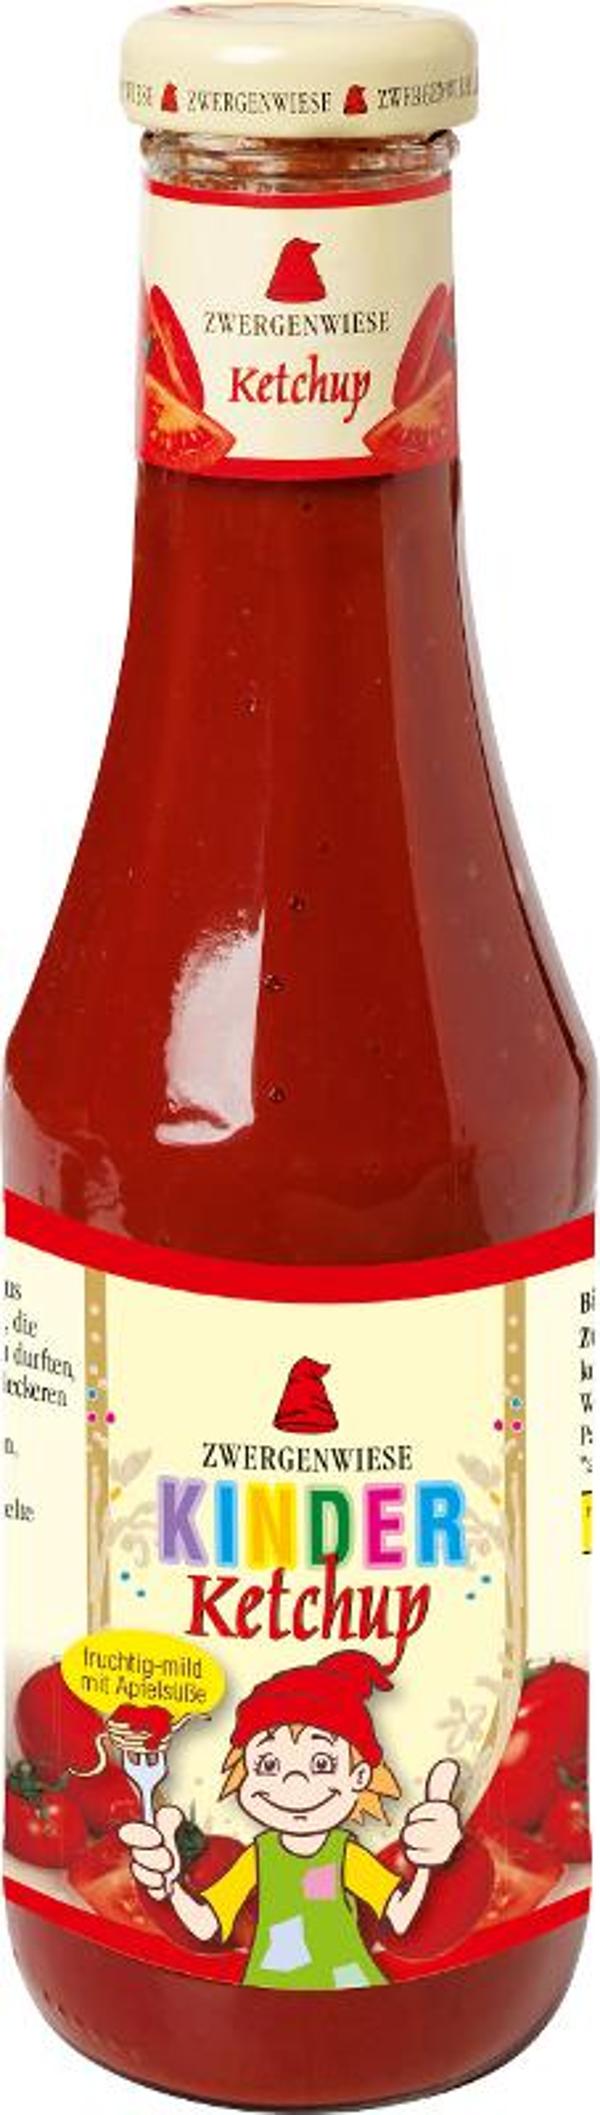 Produktfoto zu Kinder-Ketchup mit Apfelsüße